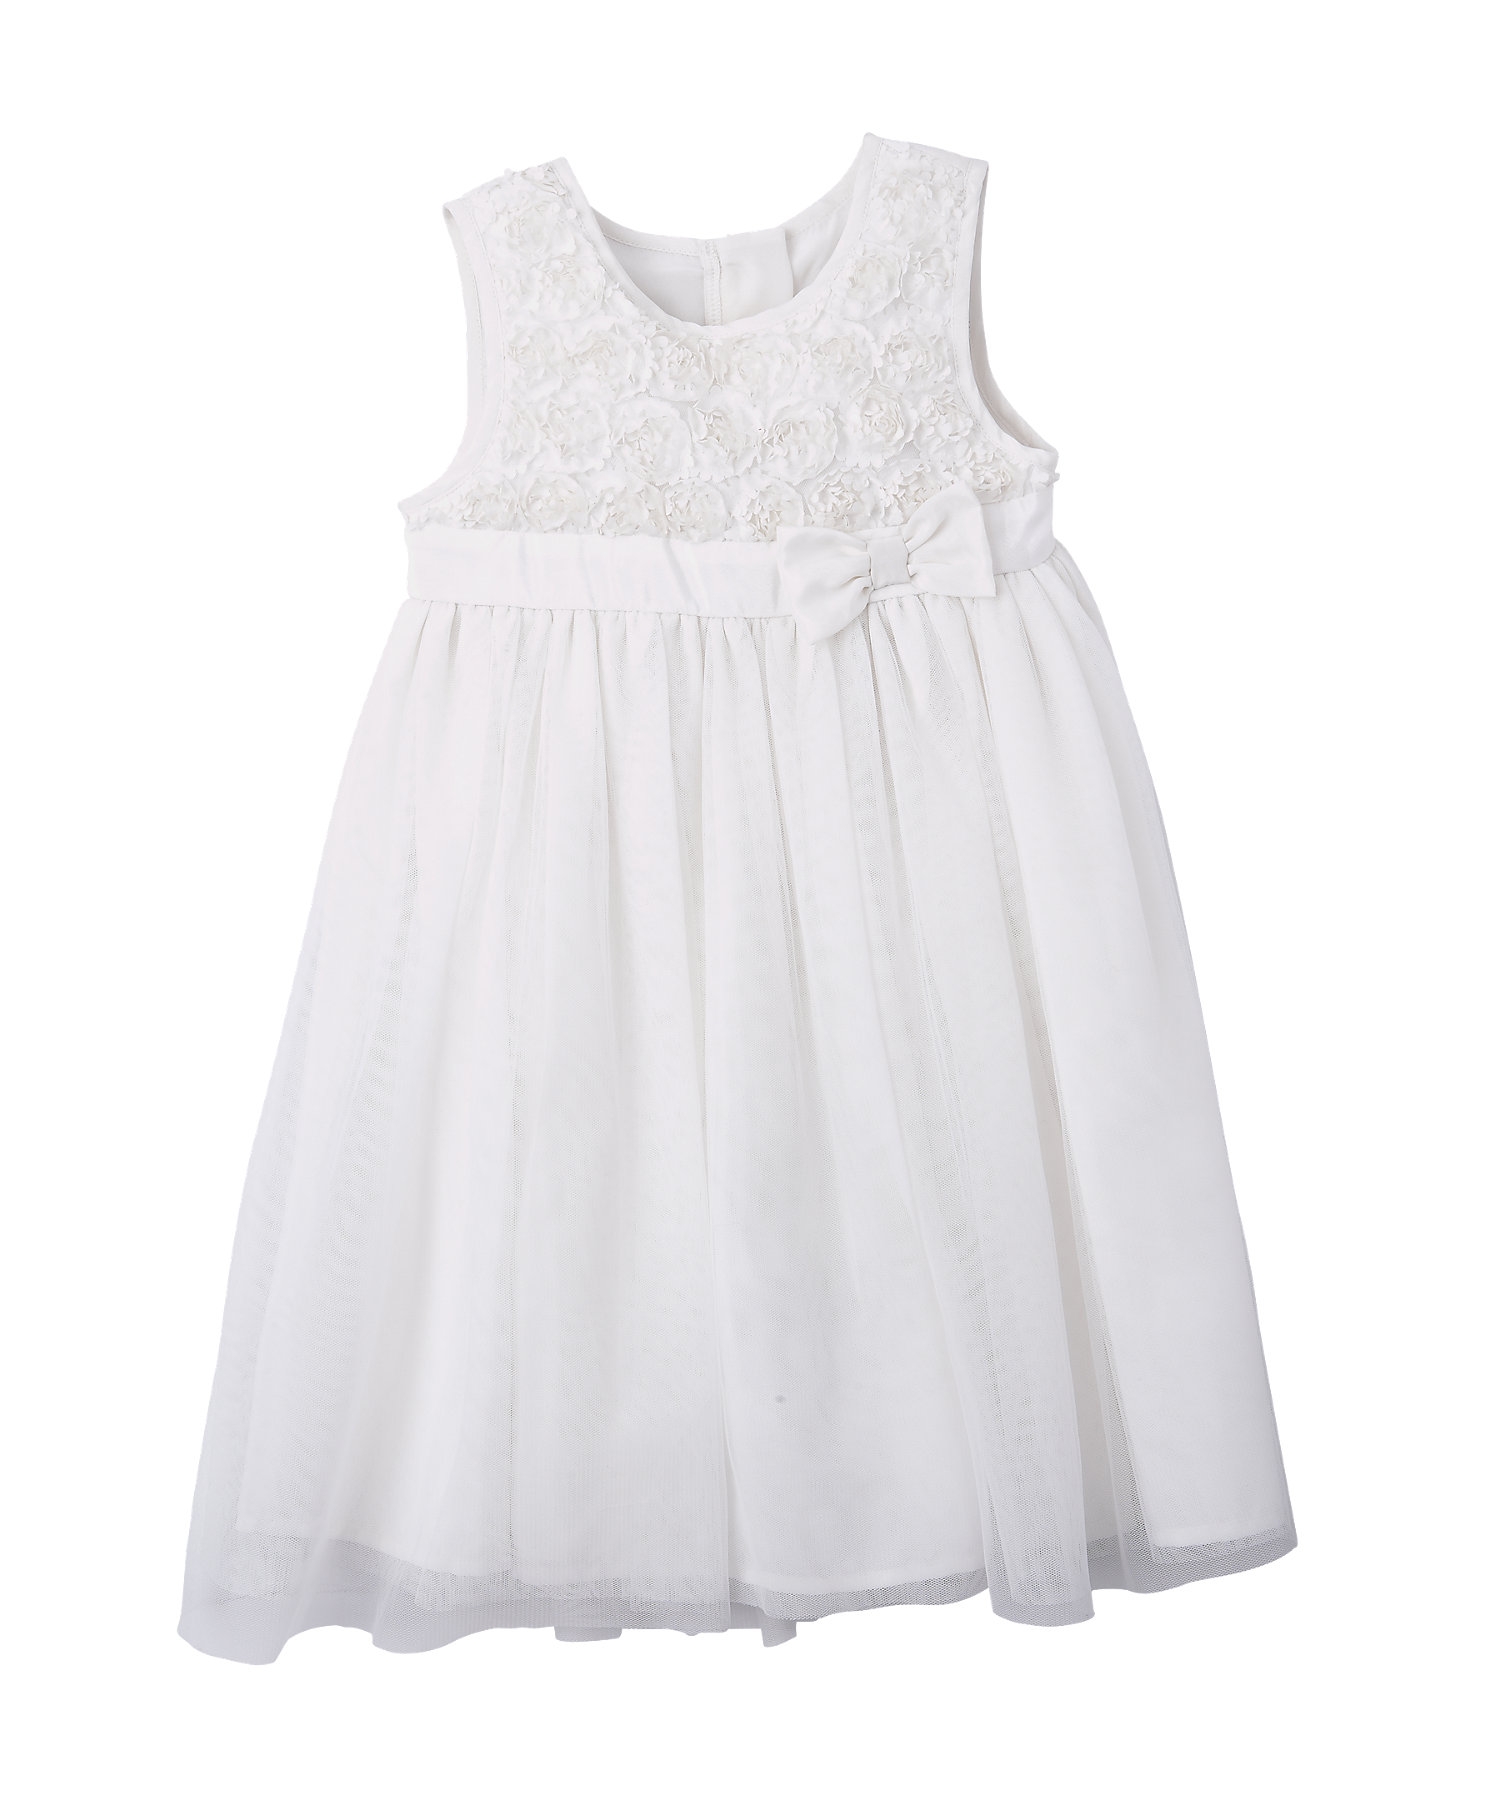 Mothercare | Girls Sleeveless Rosette Party Dress Bow Detail - Cream